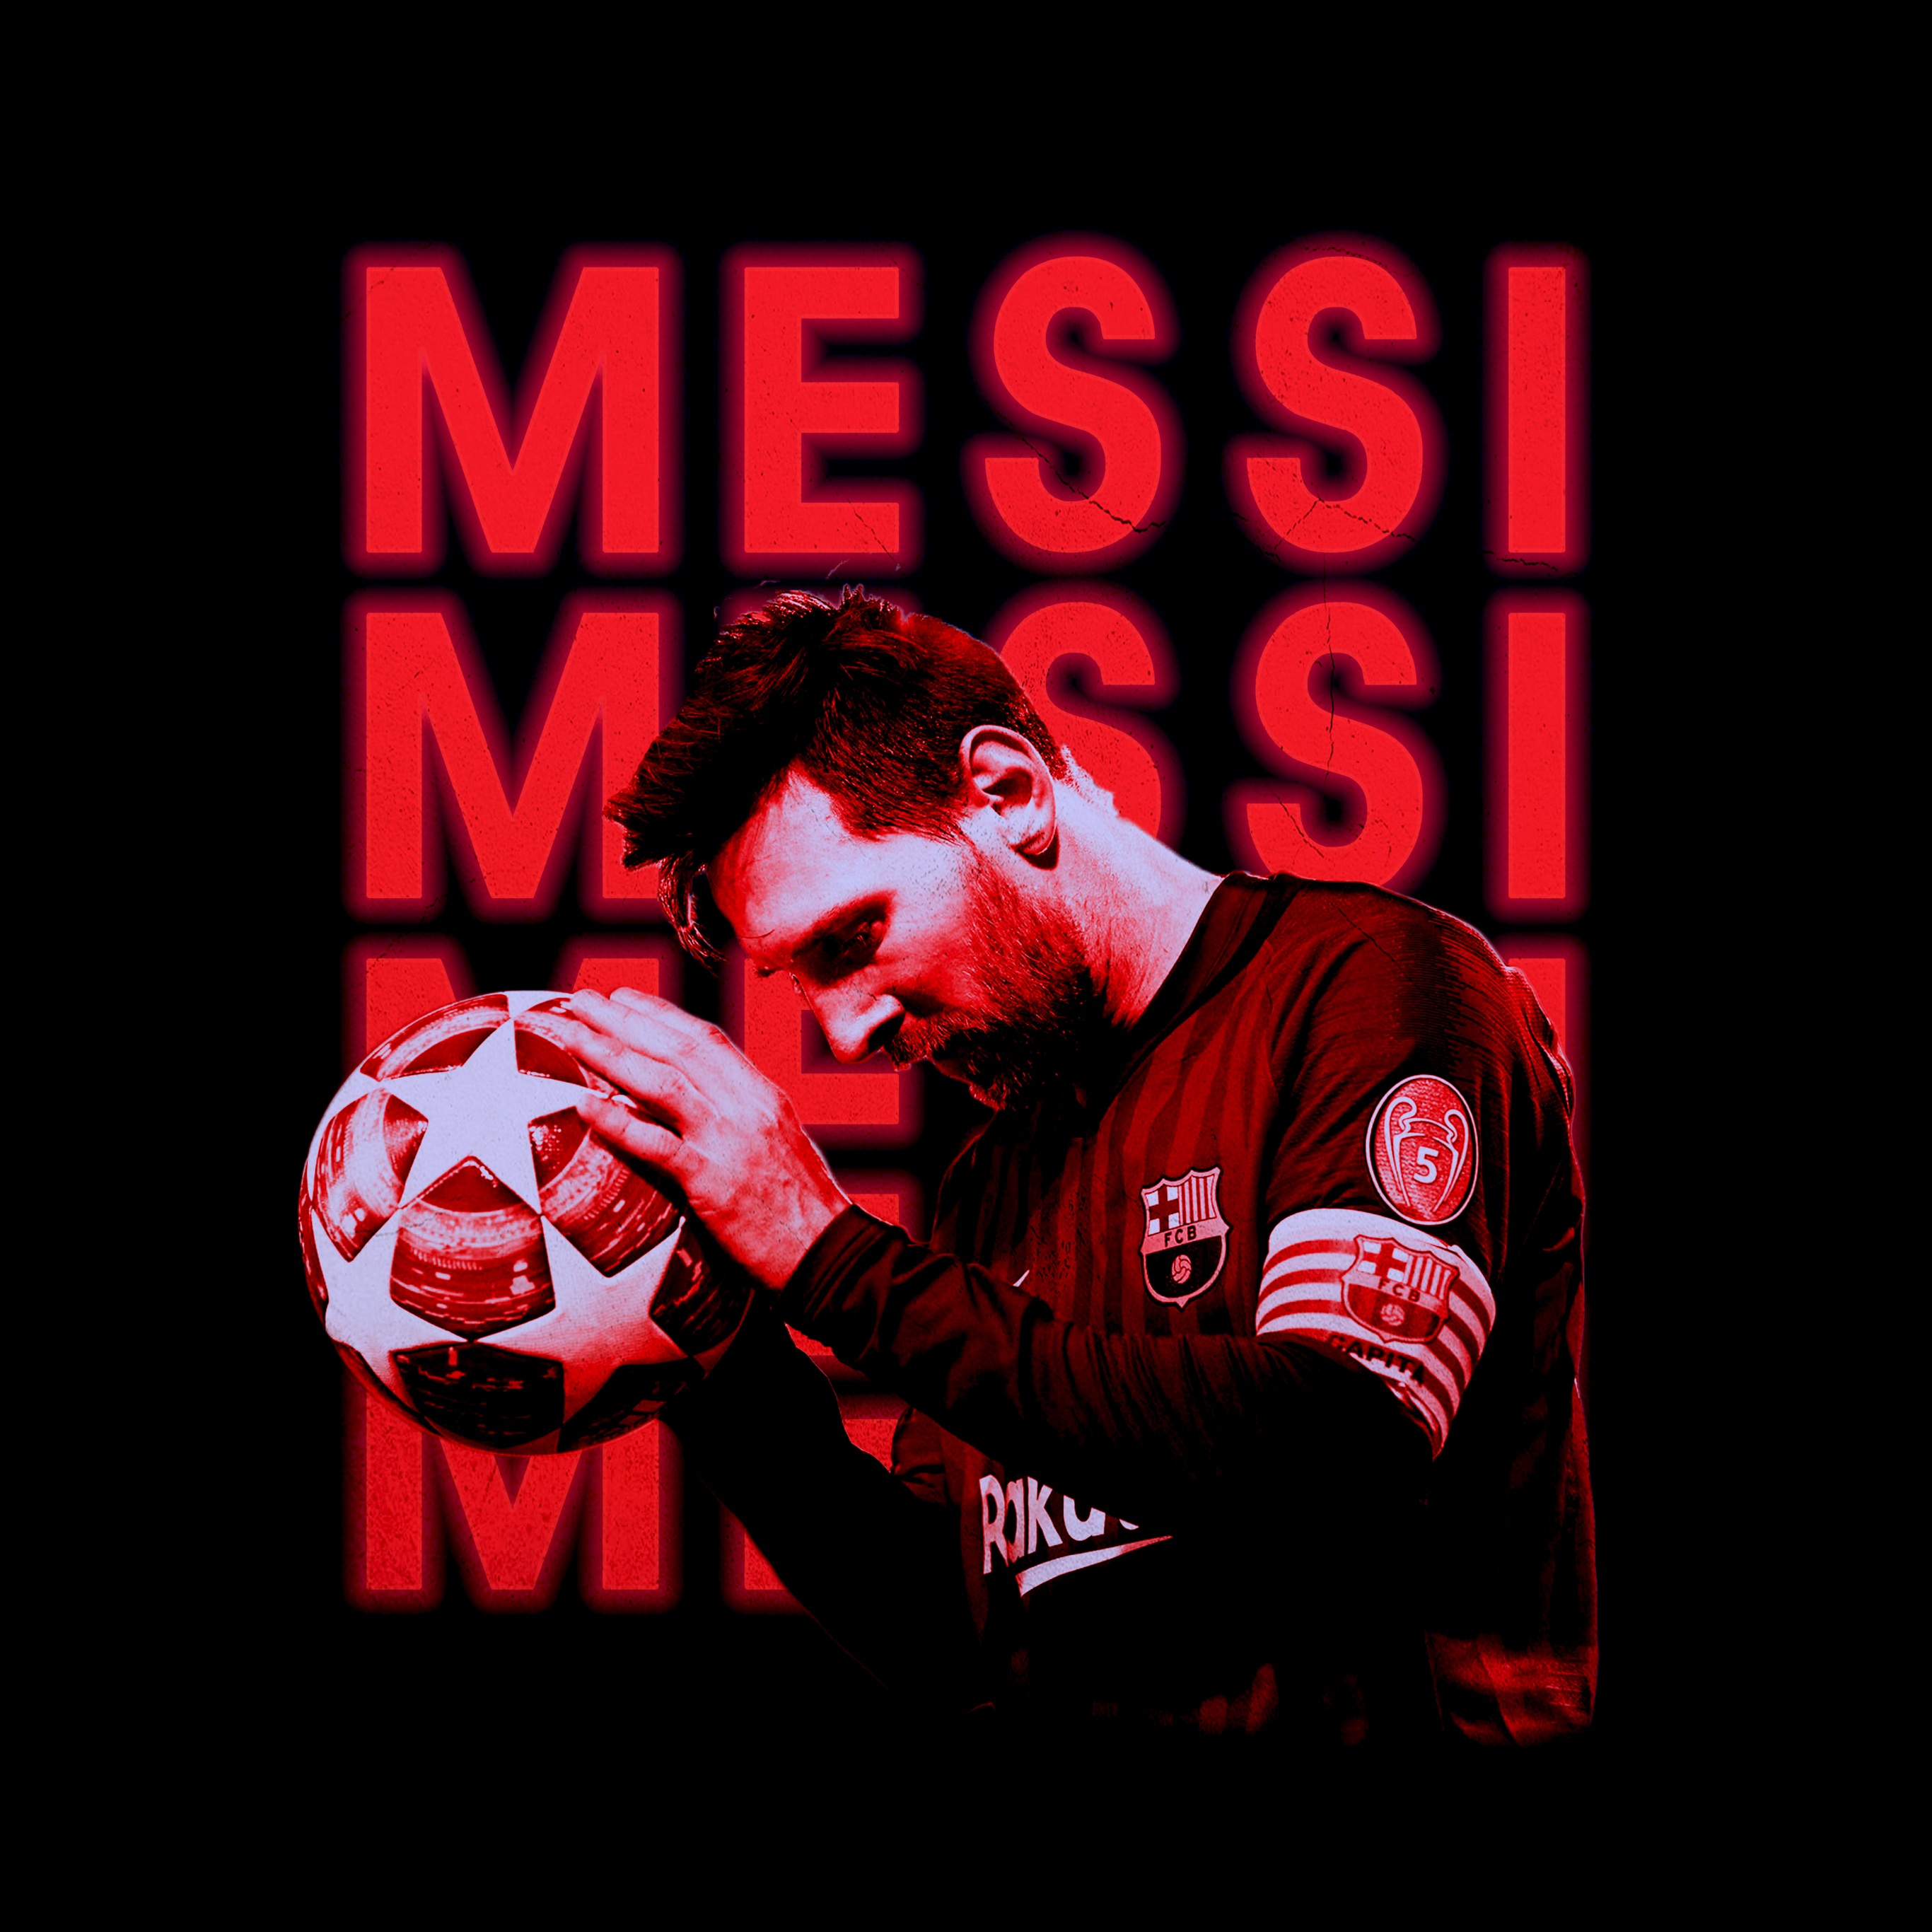 Hãy làm mới màn hình của bạn với hình nền của Lionel Messi - một trong những cầu thủ bóng đá hàng đầu thế giới. Từ ánh mắt sắc nét cho đến bản lĩnh trên sân cỏ, hình nền này chắc chắn sẽ giúp bạn truyền cảm hứng để đạt được sự nghiệp của mình. Hãy để Messi truyền cảm hứng cho bạn.